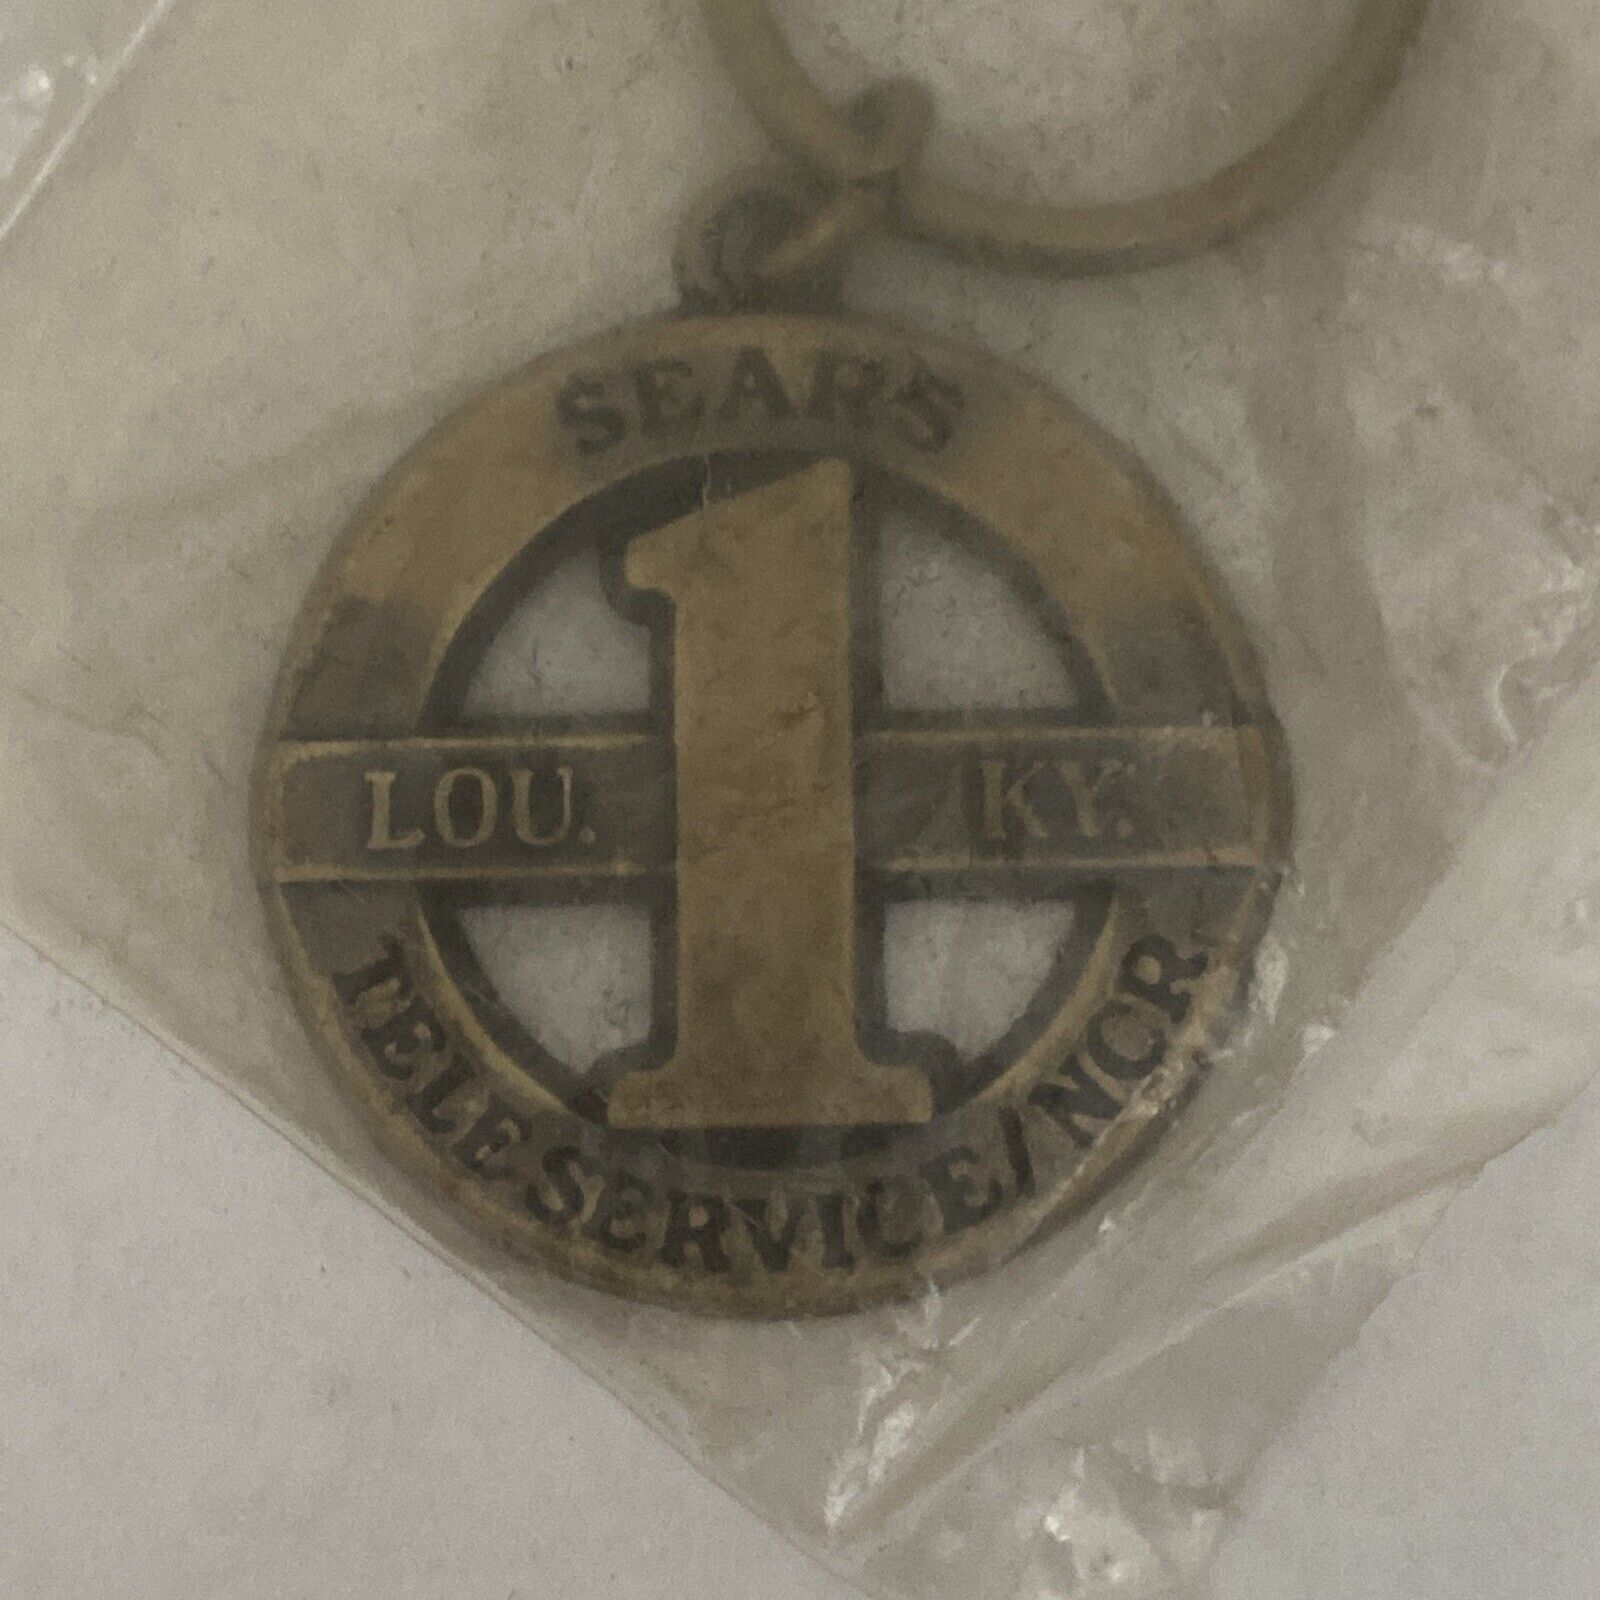 Vintage NOS Sears Brass Louisville, KY Teleservice Keychain Без бренда - фотография #2